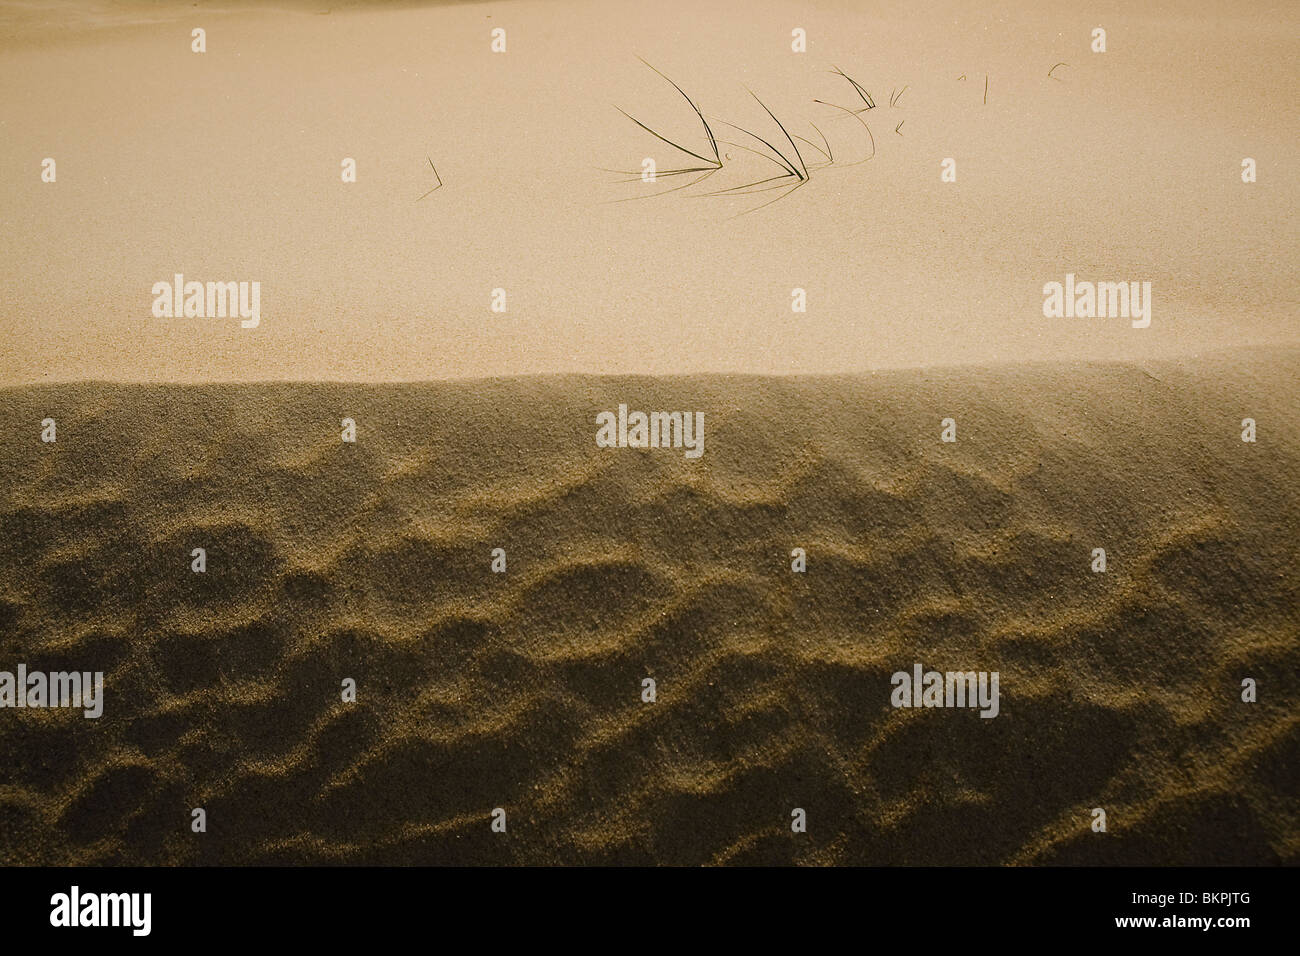 Biestarwegras op jonge duinen bij duinvorming op Texel. Sand Couch holding sand during dune formation. Ruben Smit Digital Image Archive Stock Photo